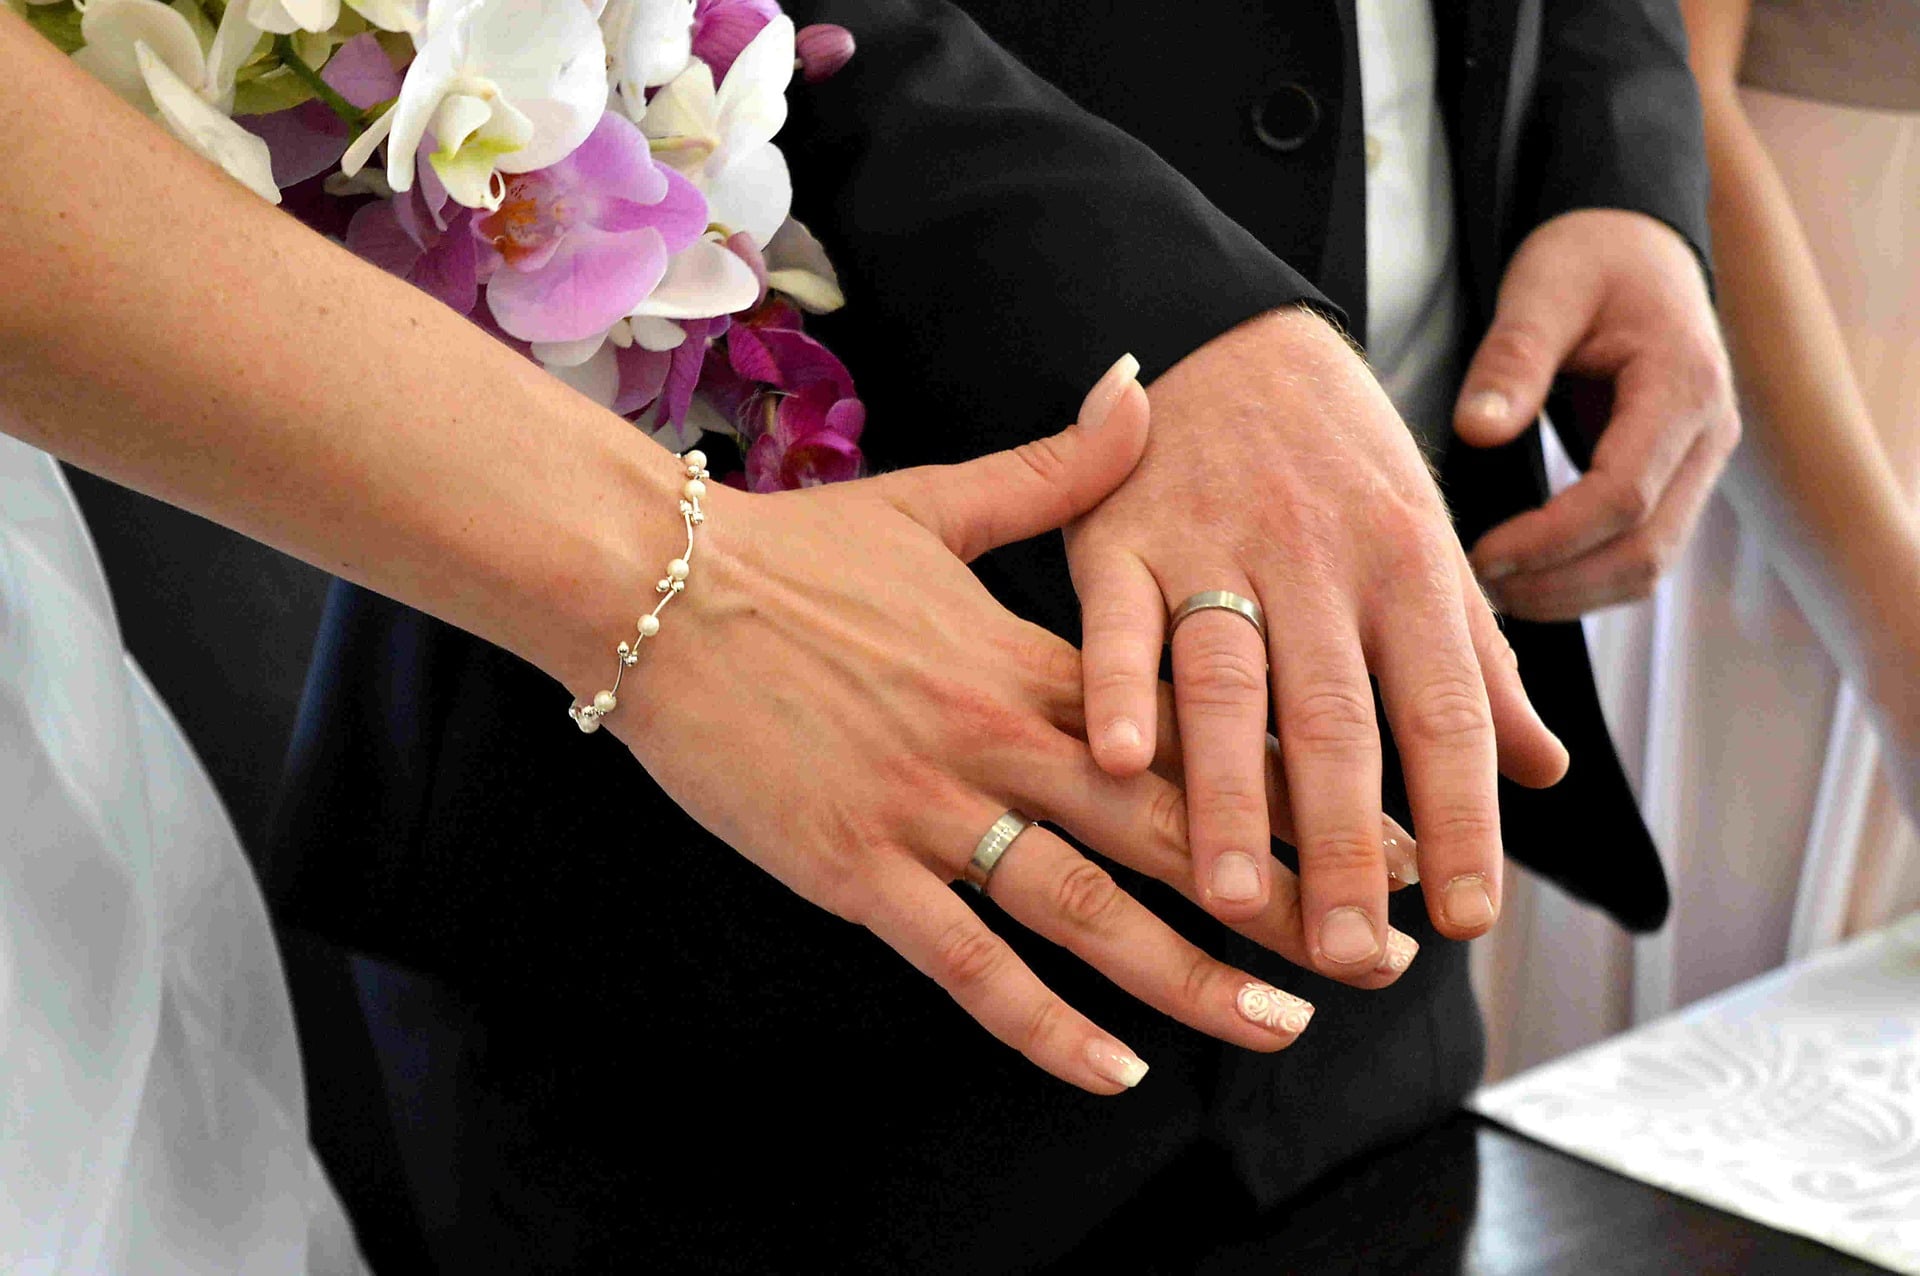 Marriage wife. Обручальные кольца на руках. Свадебные кольца на руках. Кольца жениха и невесты. Свадьба руки с кольцами.